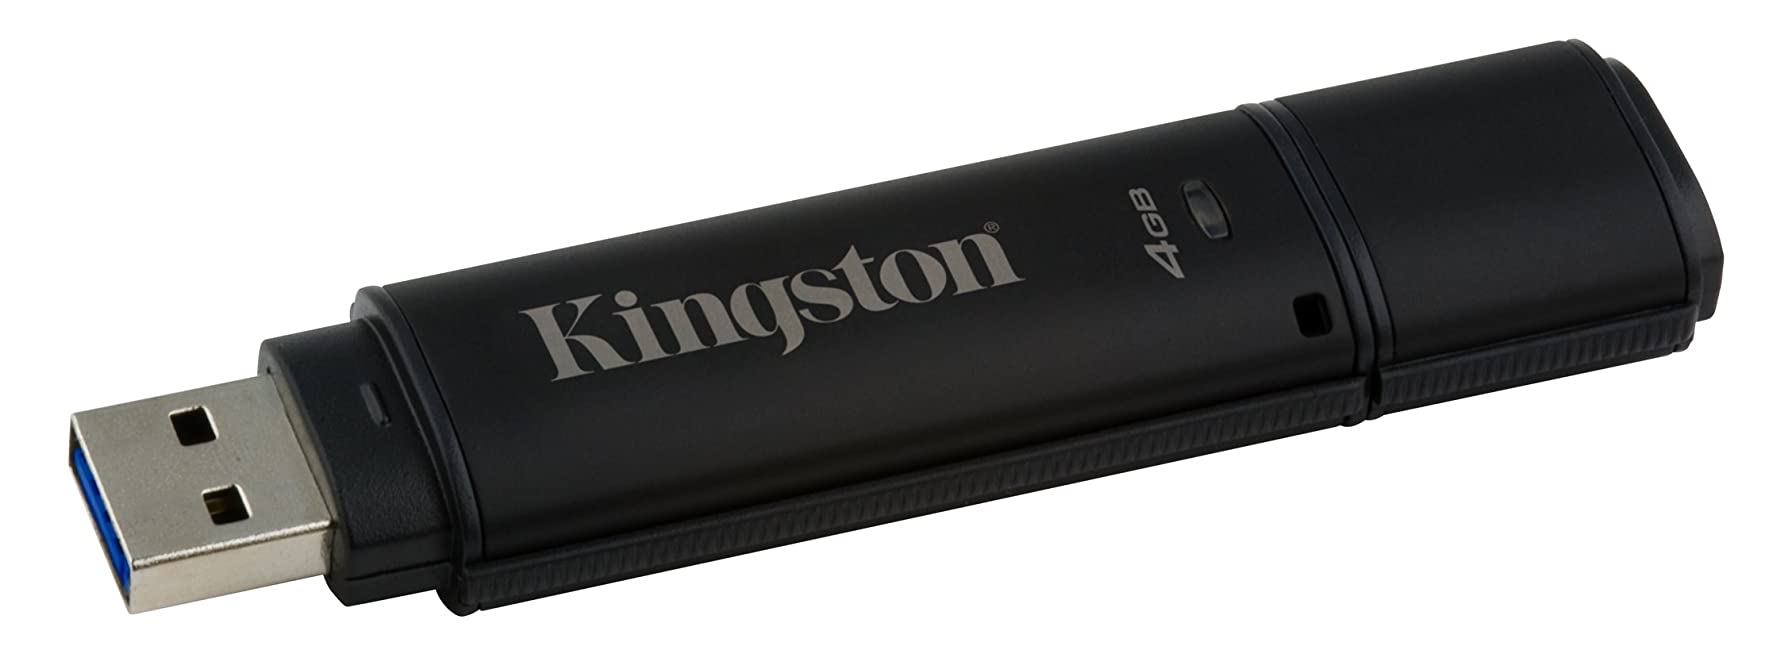 รับผลิต คิงส์ตันราคาส่ง ติดโลโก้ ประกันห้าปี Digital USB2.0 Kingston